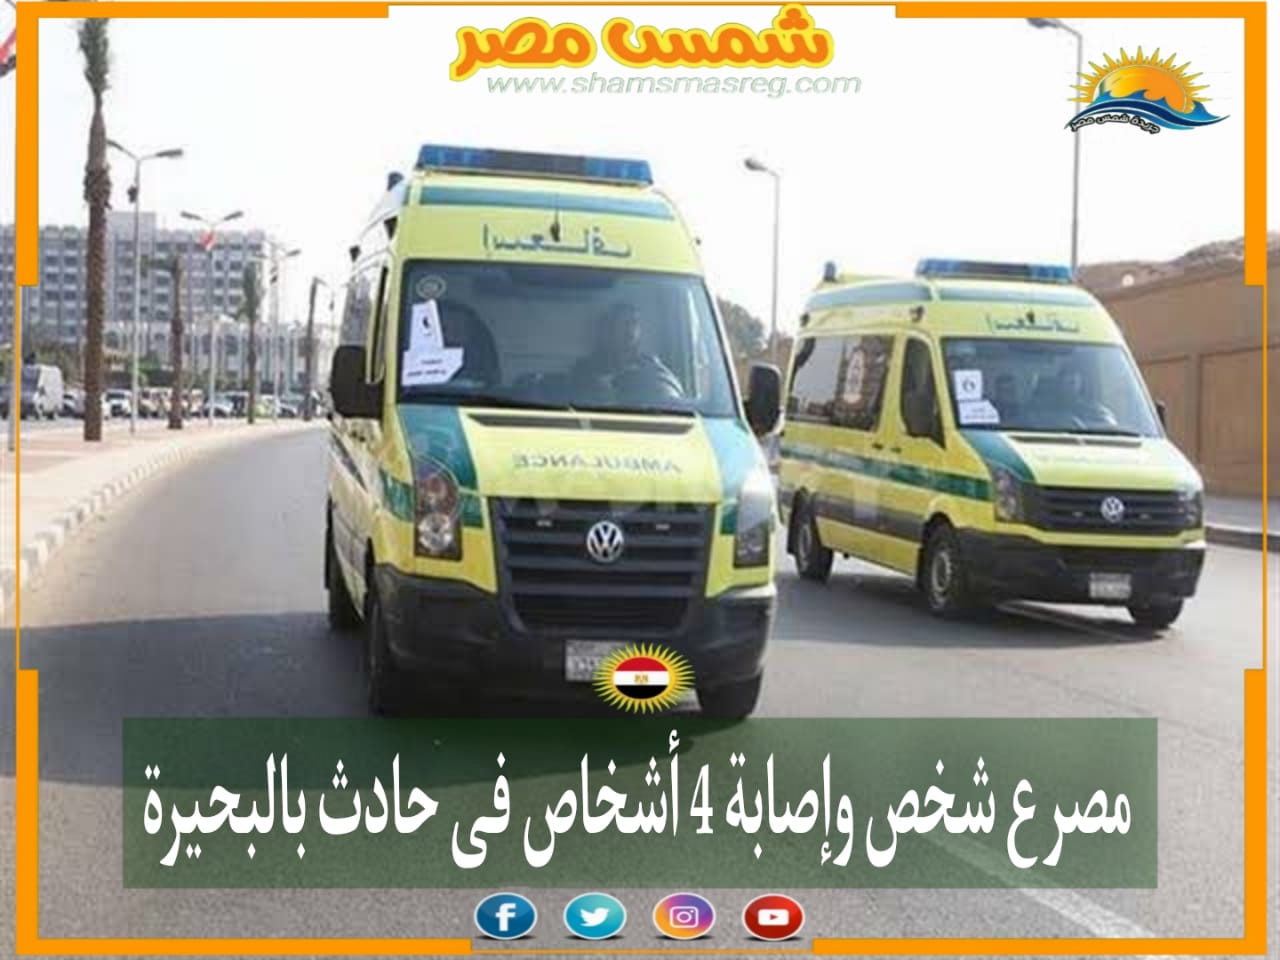 |شمس مصر|.. مصرع شخص وإصابة 4 أشخاص في حادث بالبحيرة.